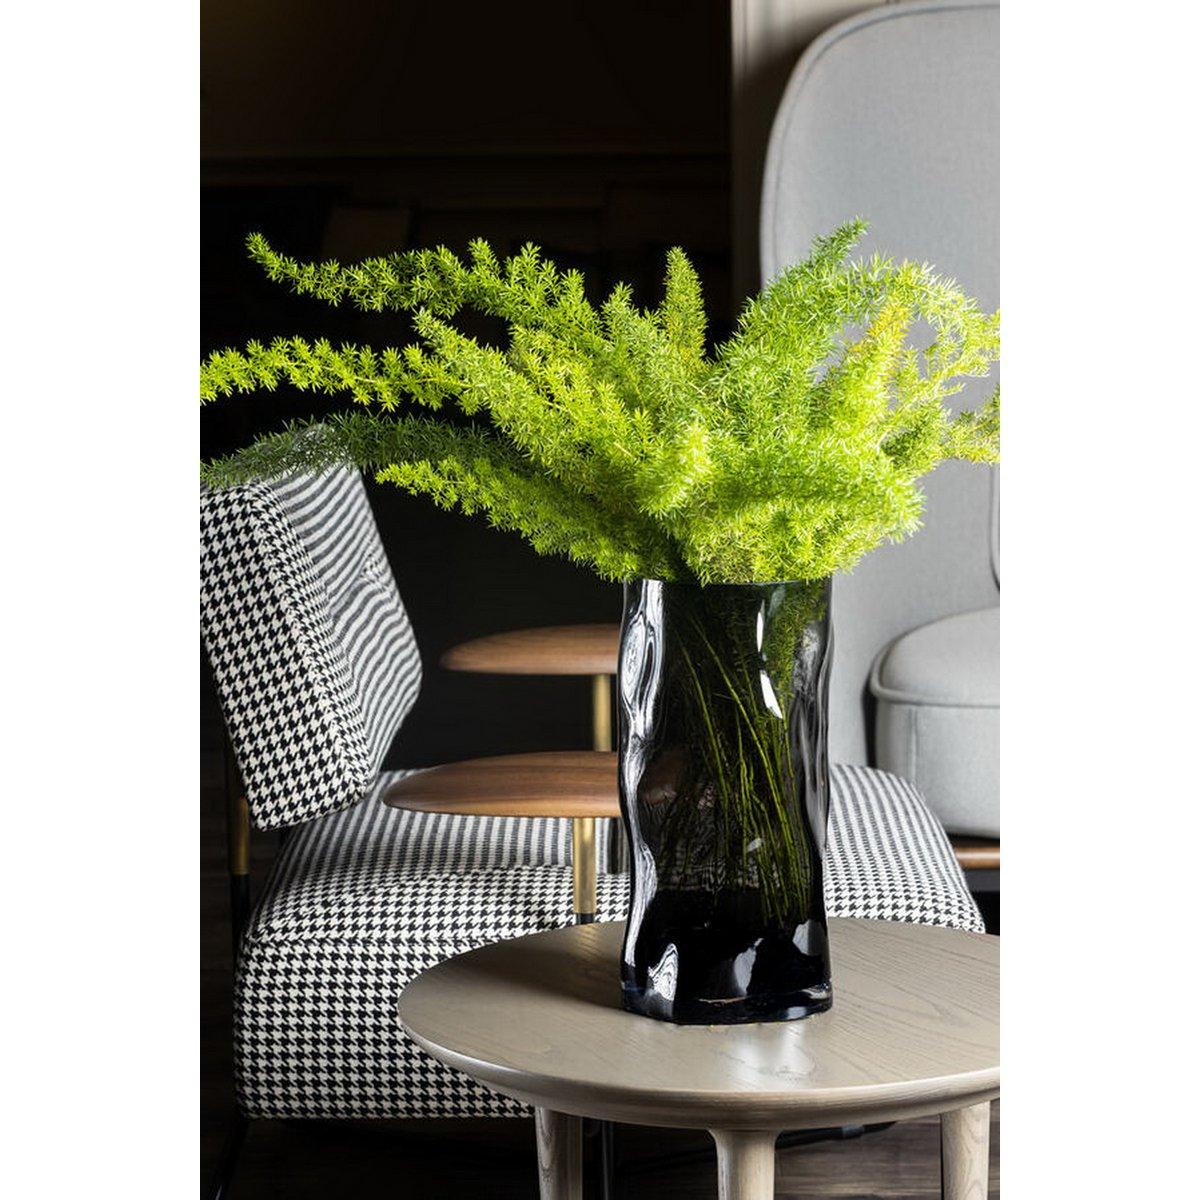 Hohe zylindrische Vase aus 9 mm dickem Glas, unregelmäßige Form, wie schwarzes Holz. ABU40GR - HomeDesign Knaus